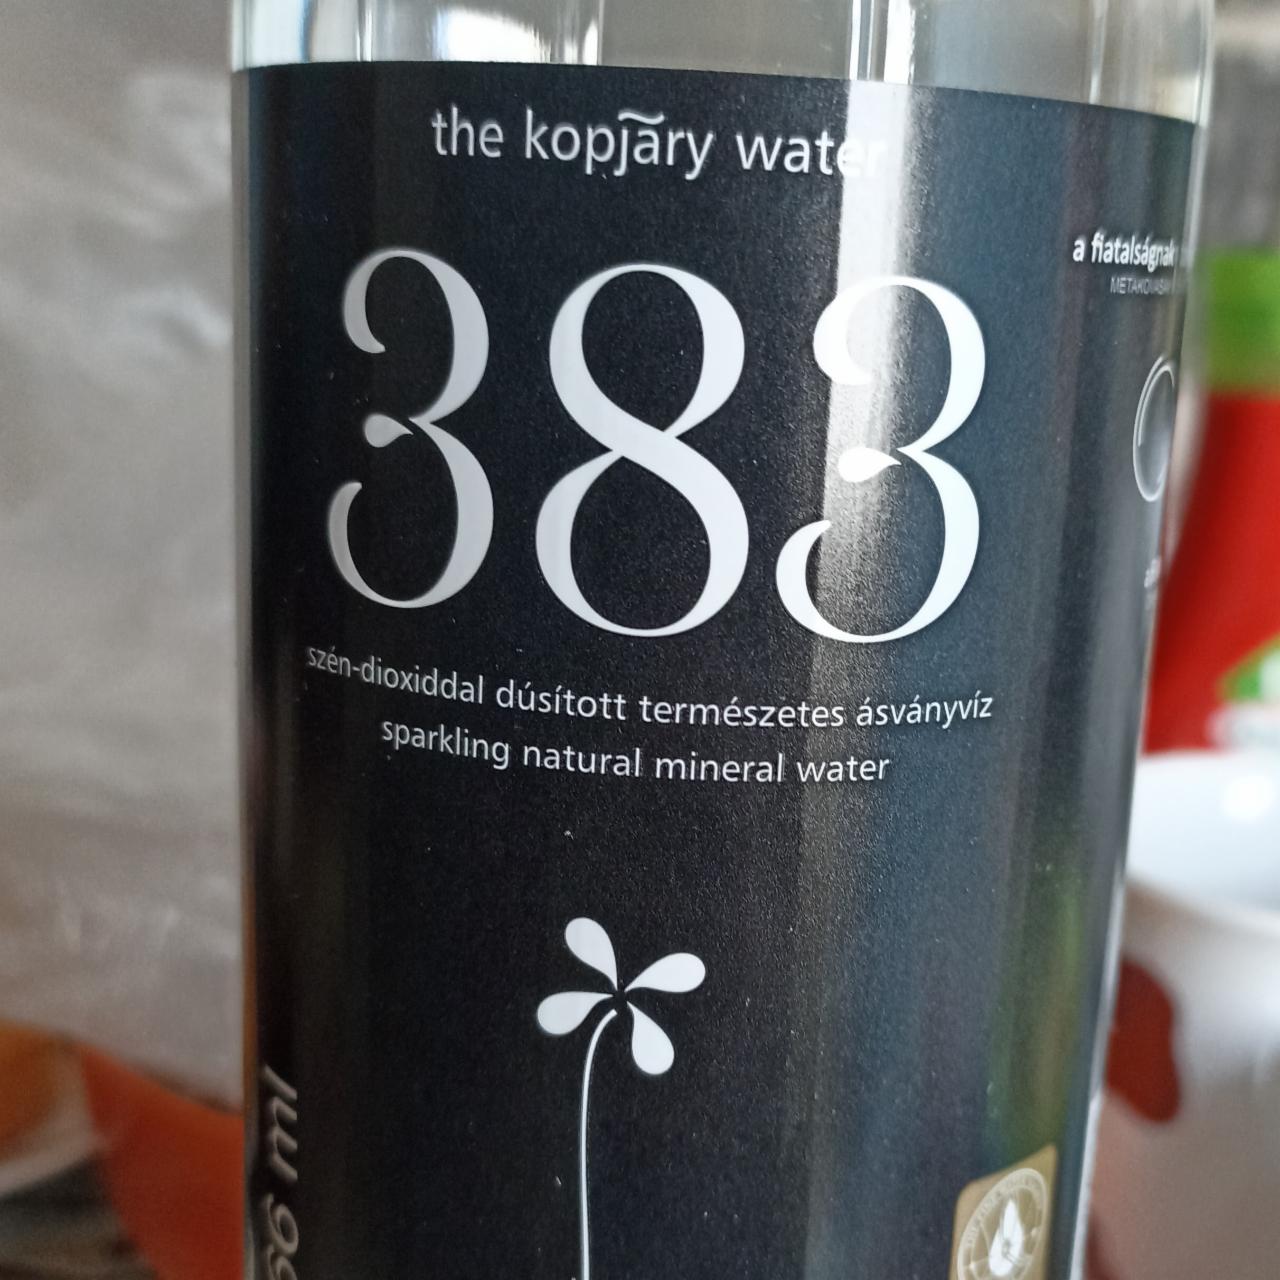 Képek - 383 széndioxiddal dúsított természetes ásványvíz The Kopjary water